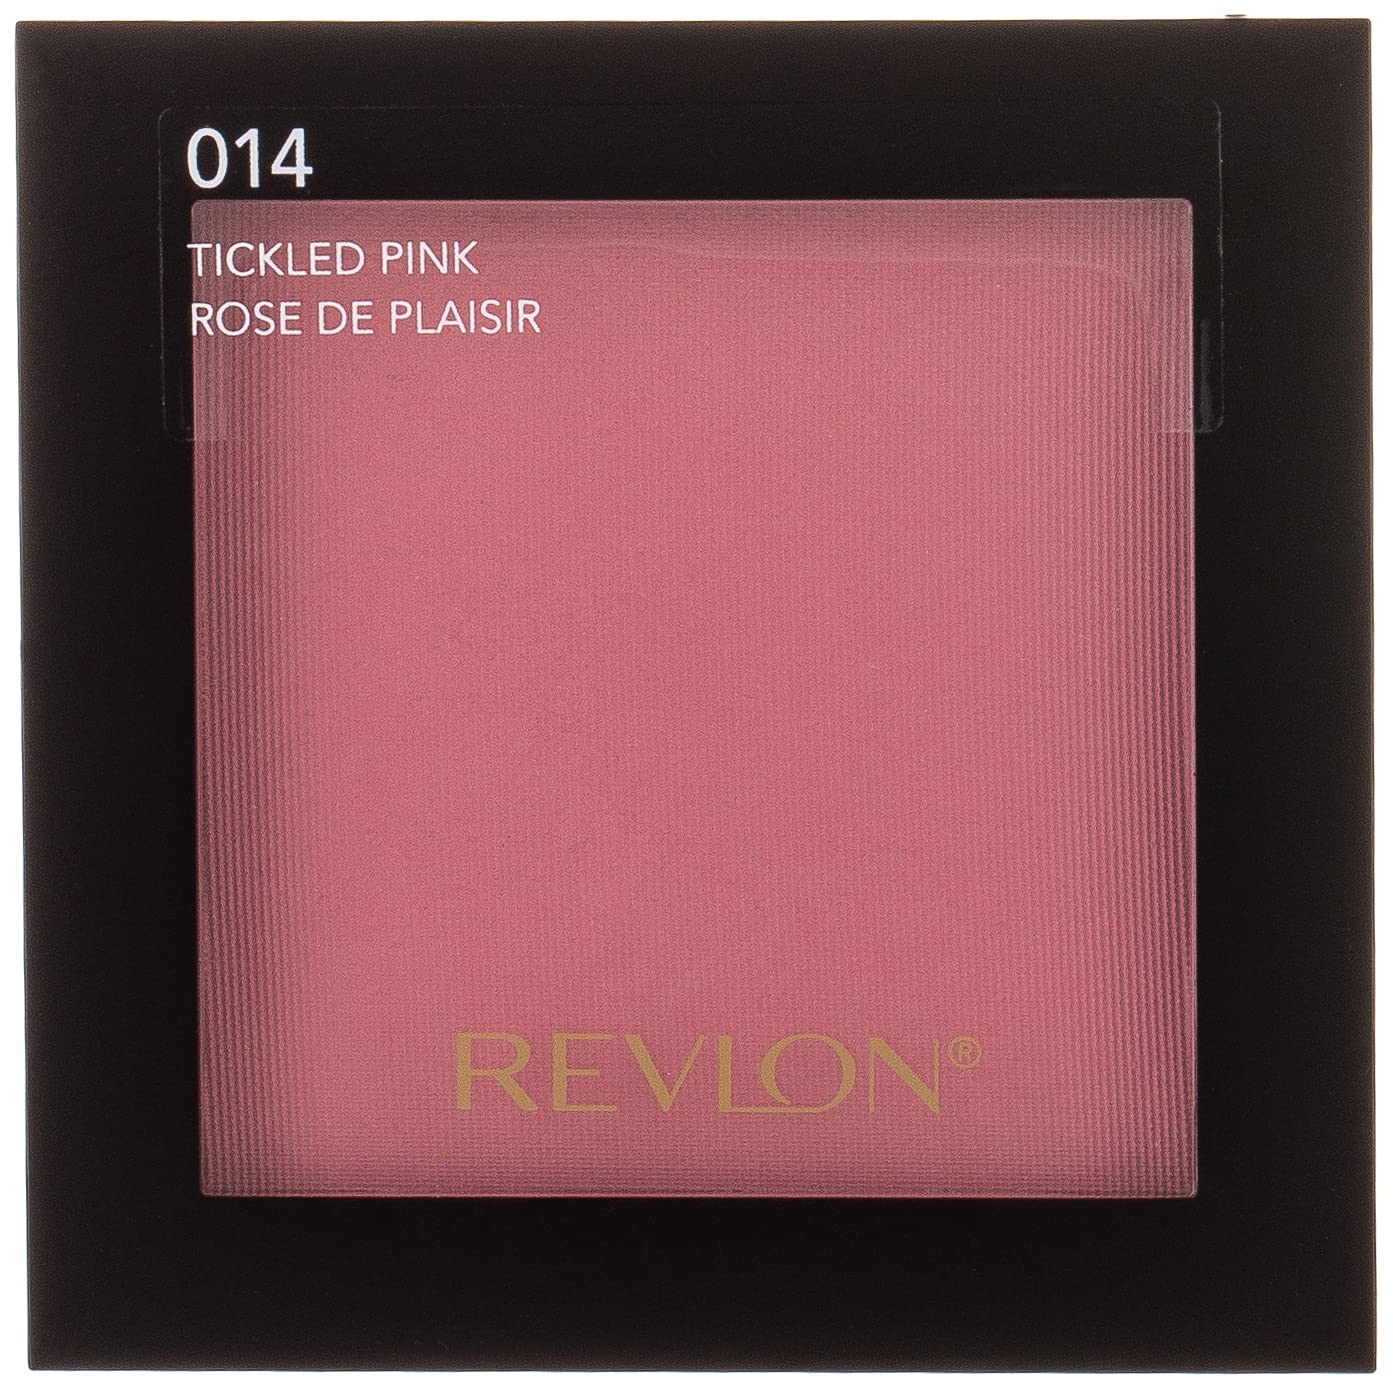 Румяна матовые Revlon Matte Powder Blush 014 Tickled Pink 5 г (528674) - фото 1